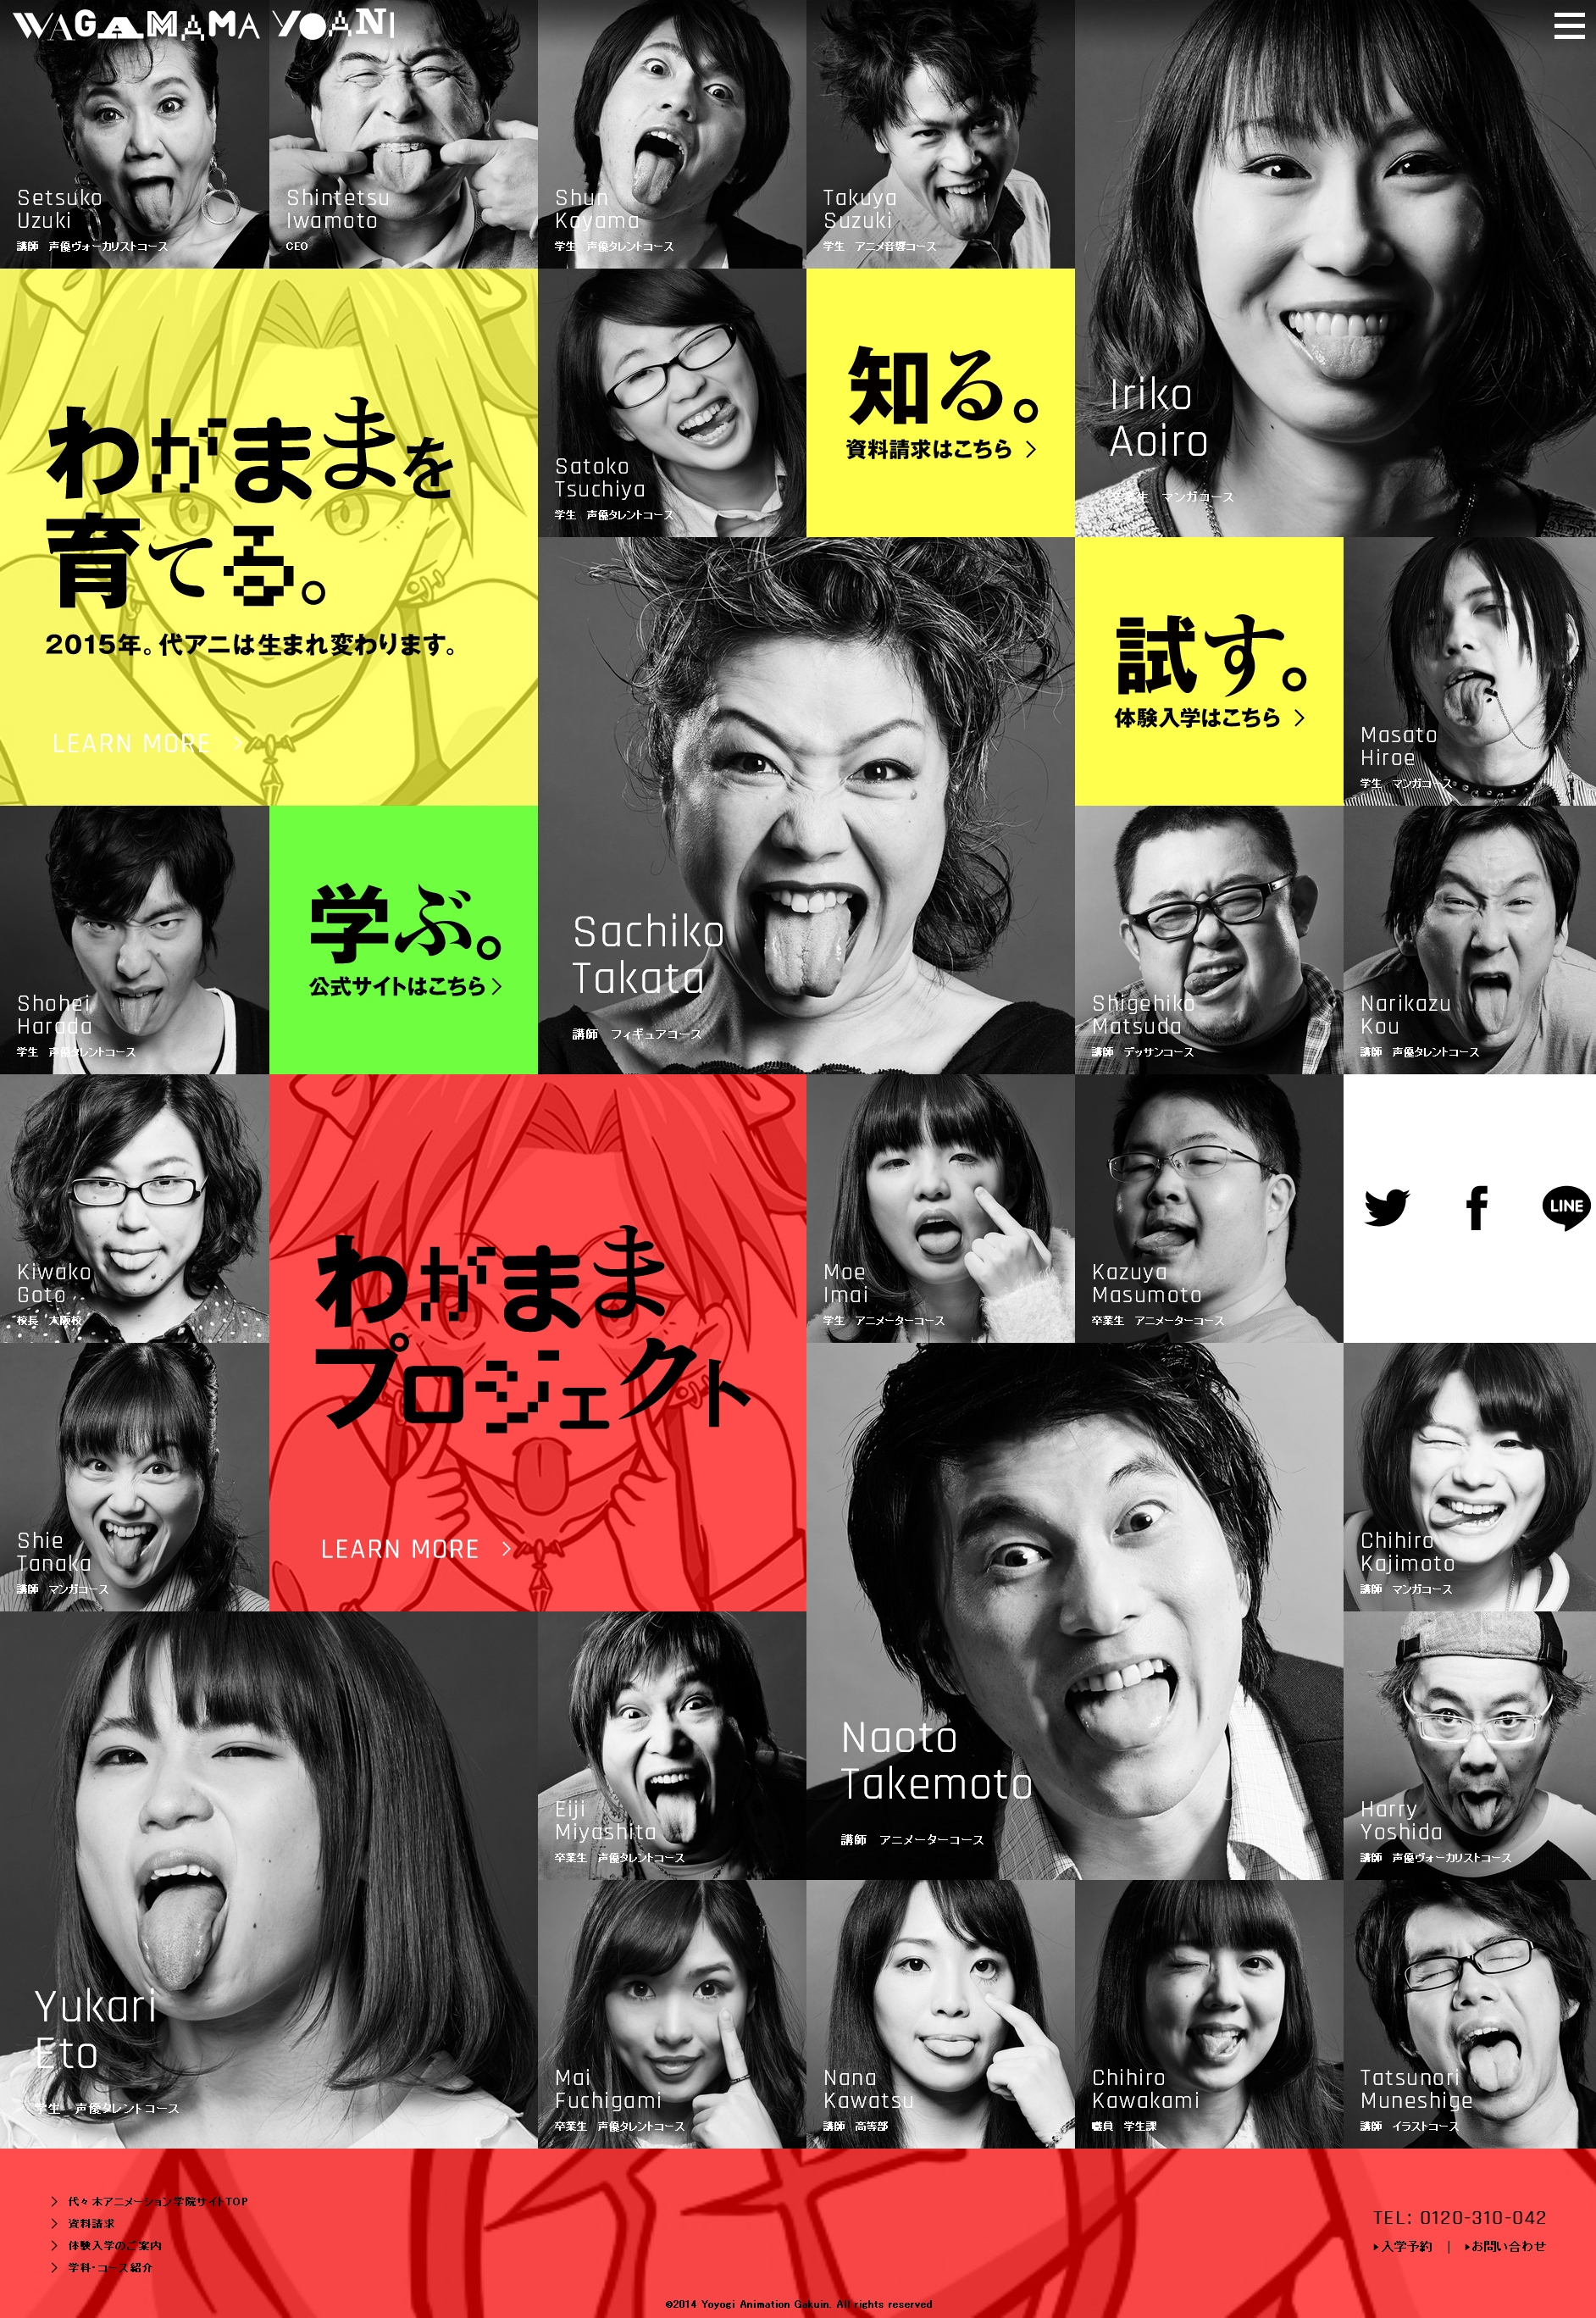 YOANI-属于你的“鬼表情”自私宣言!日本代代木动画学院!酷站截图